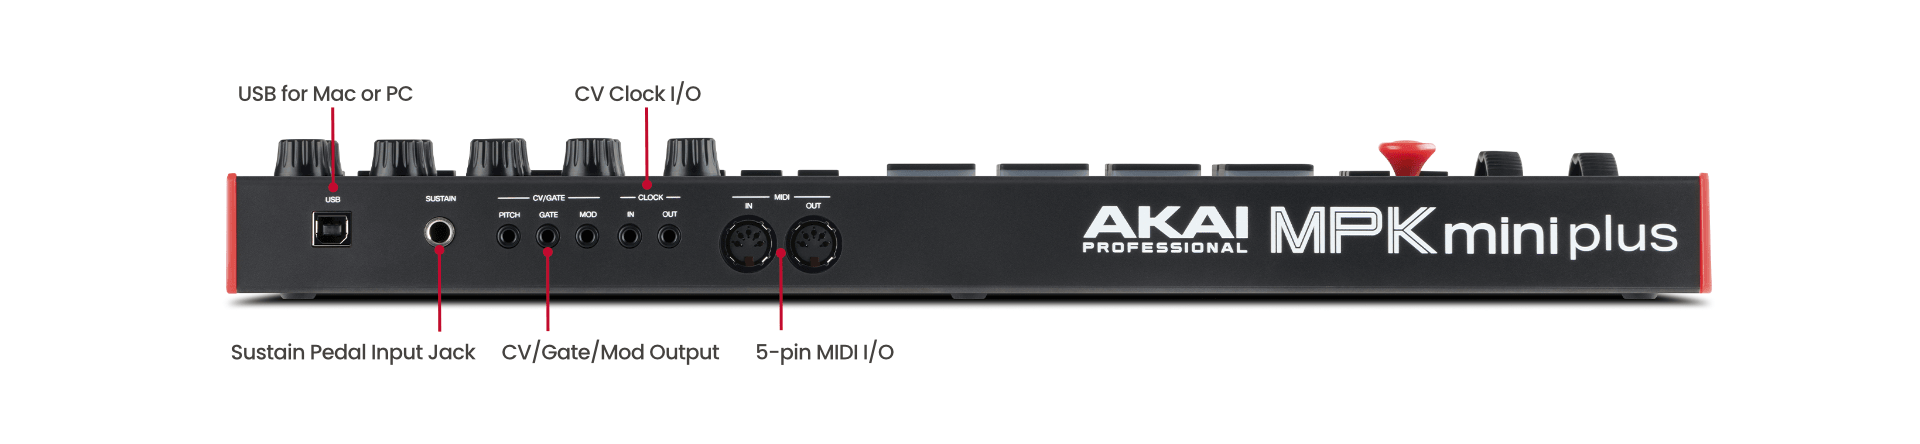 میدی کنترلر آکایی AKAI MPK Mini Plus - خرید میدی کنترلر - میدی کیبورد آکایی - آکایی MPK Mini Plus - میدی کنترلر ام پی کی مینی پلاس - میدی AKAI MPK Mini - فروشگاه اینترنتی کالا استودیو